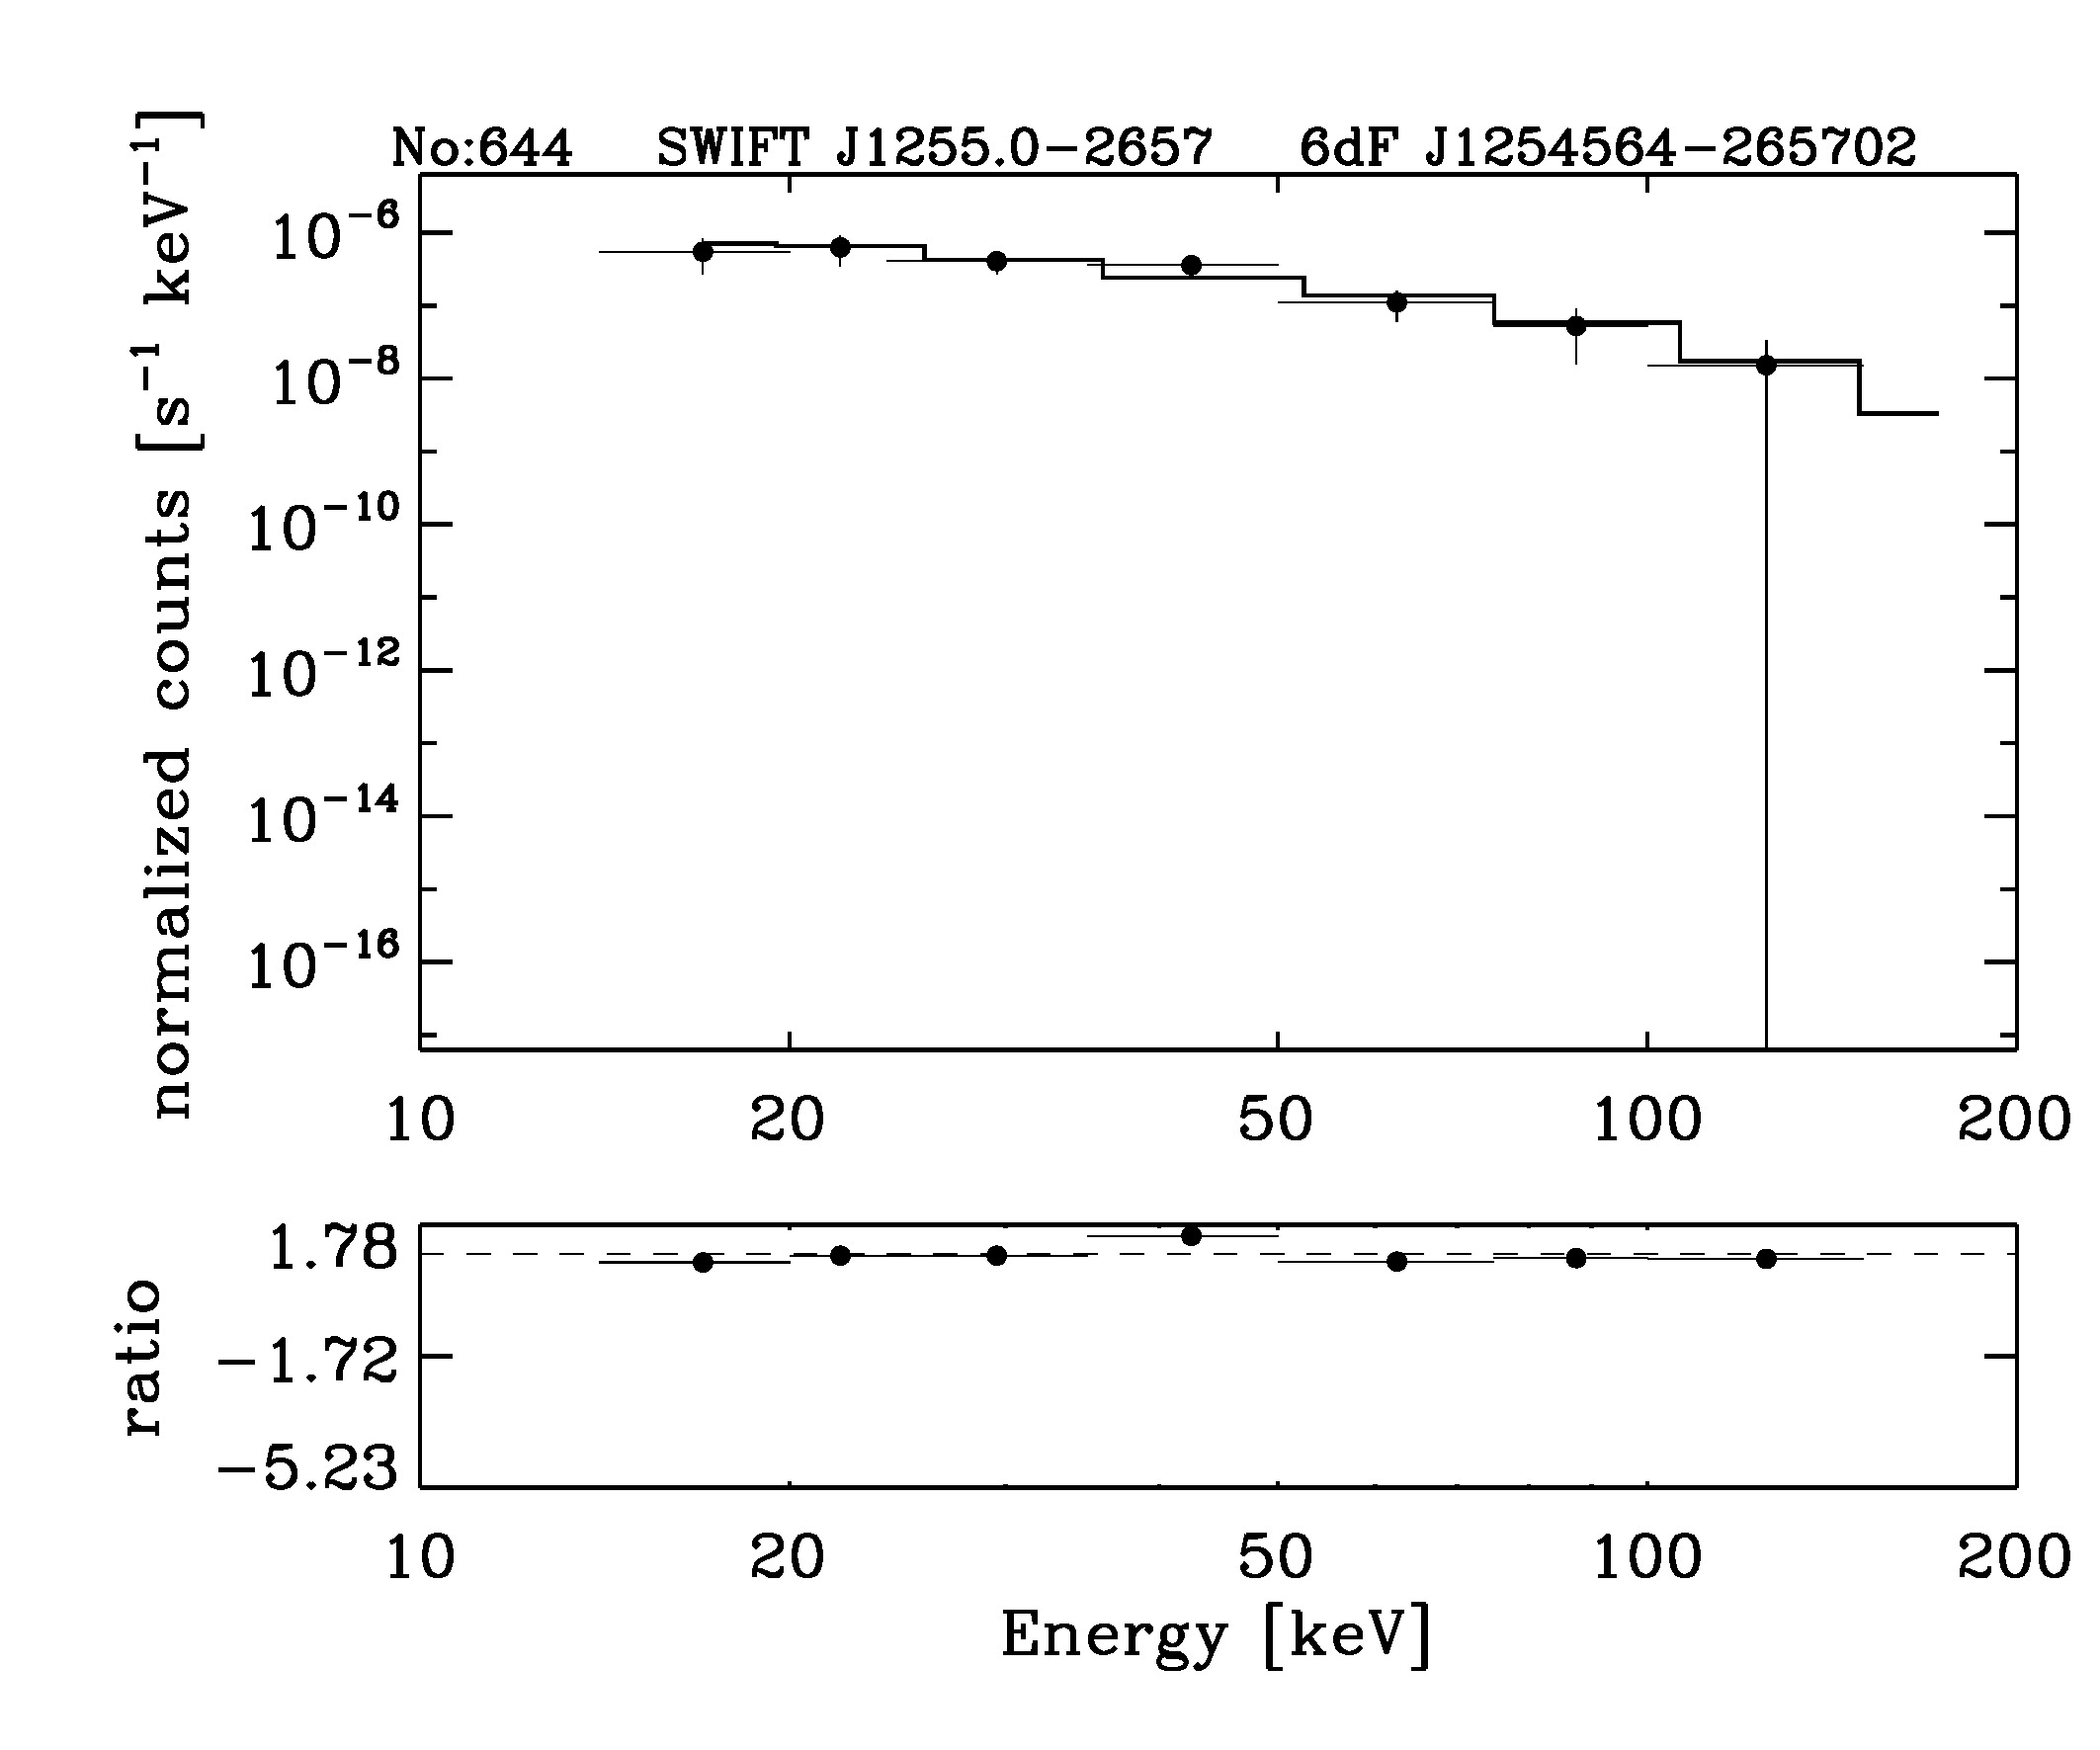 BAT Spectrum for SWIFT J1255.0-2657